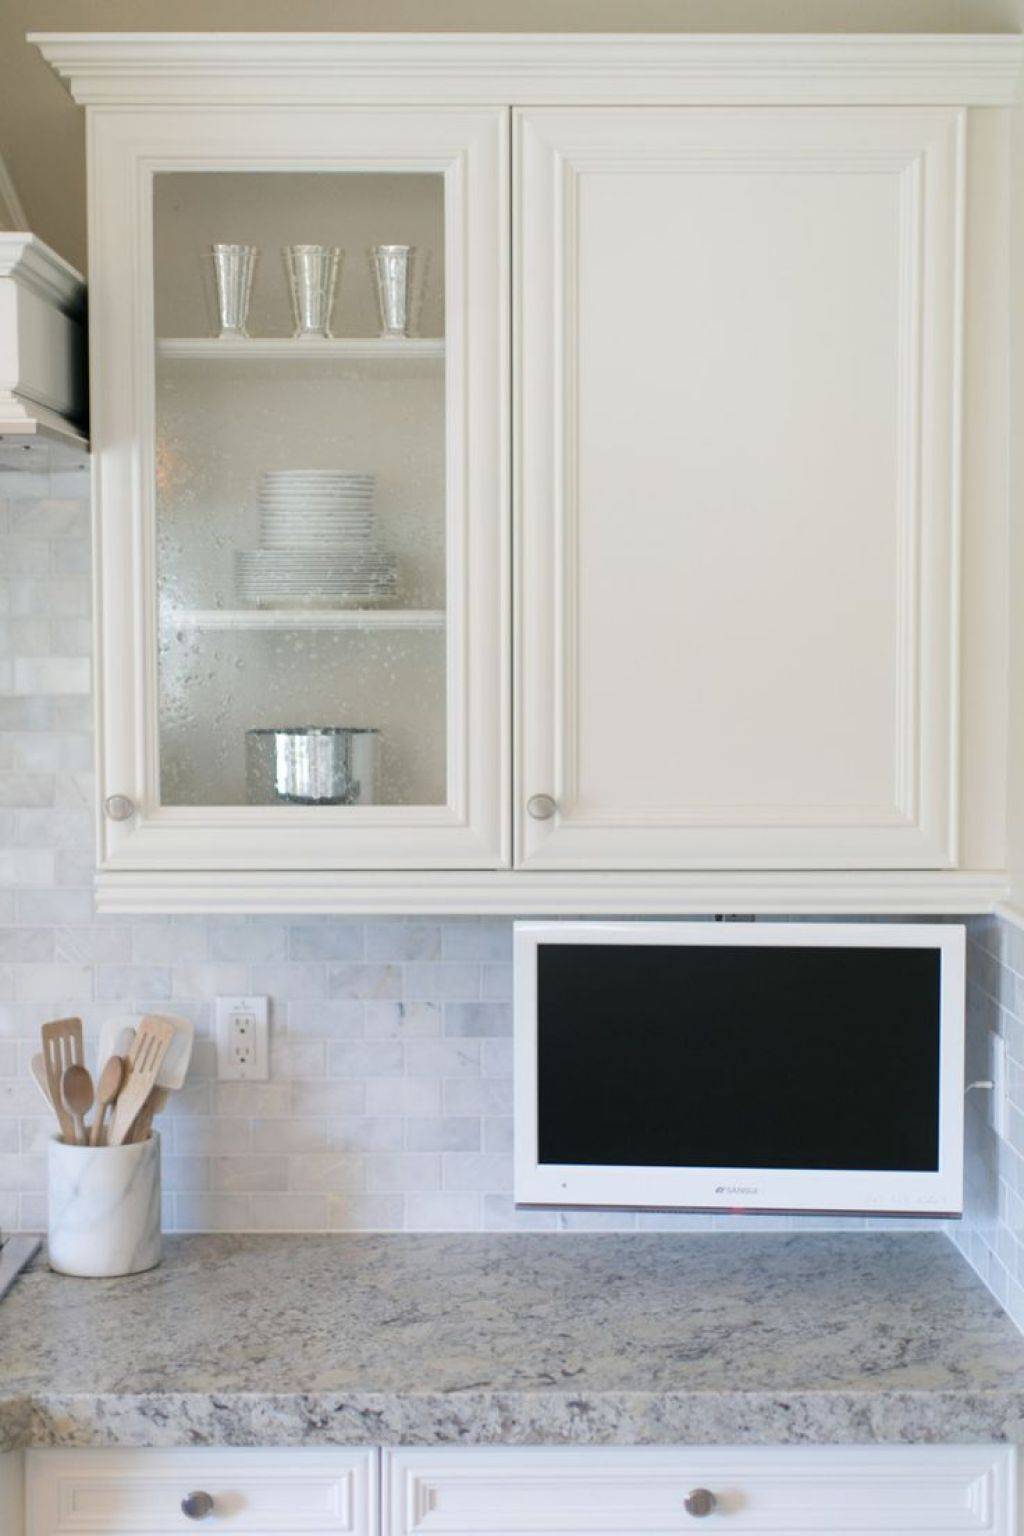 Как расположить телевизор на кухне: 4 варианта размещения + фото в интерьере